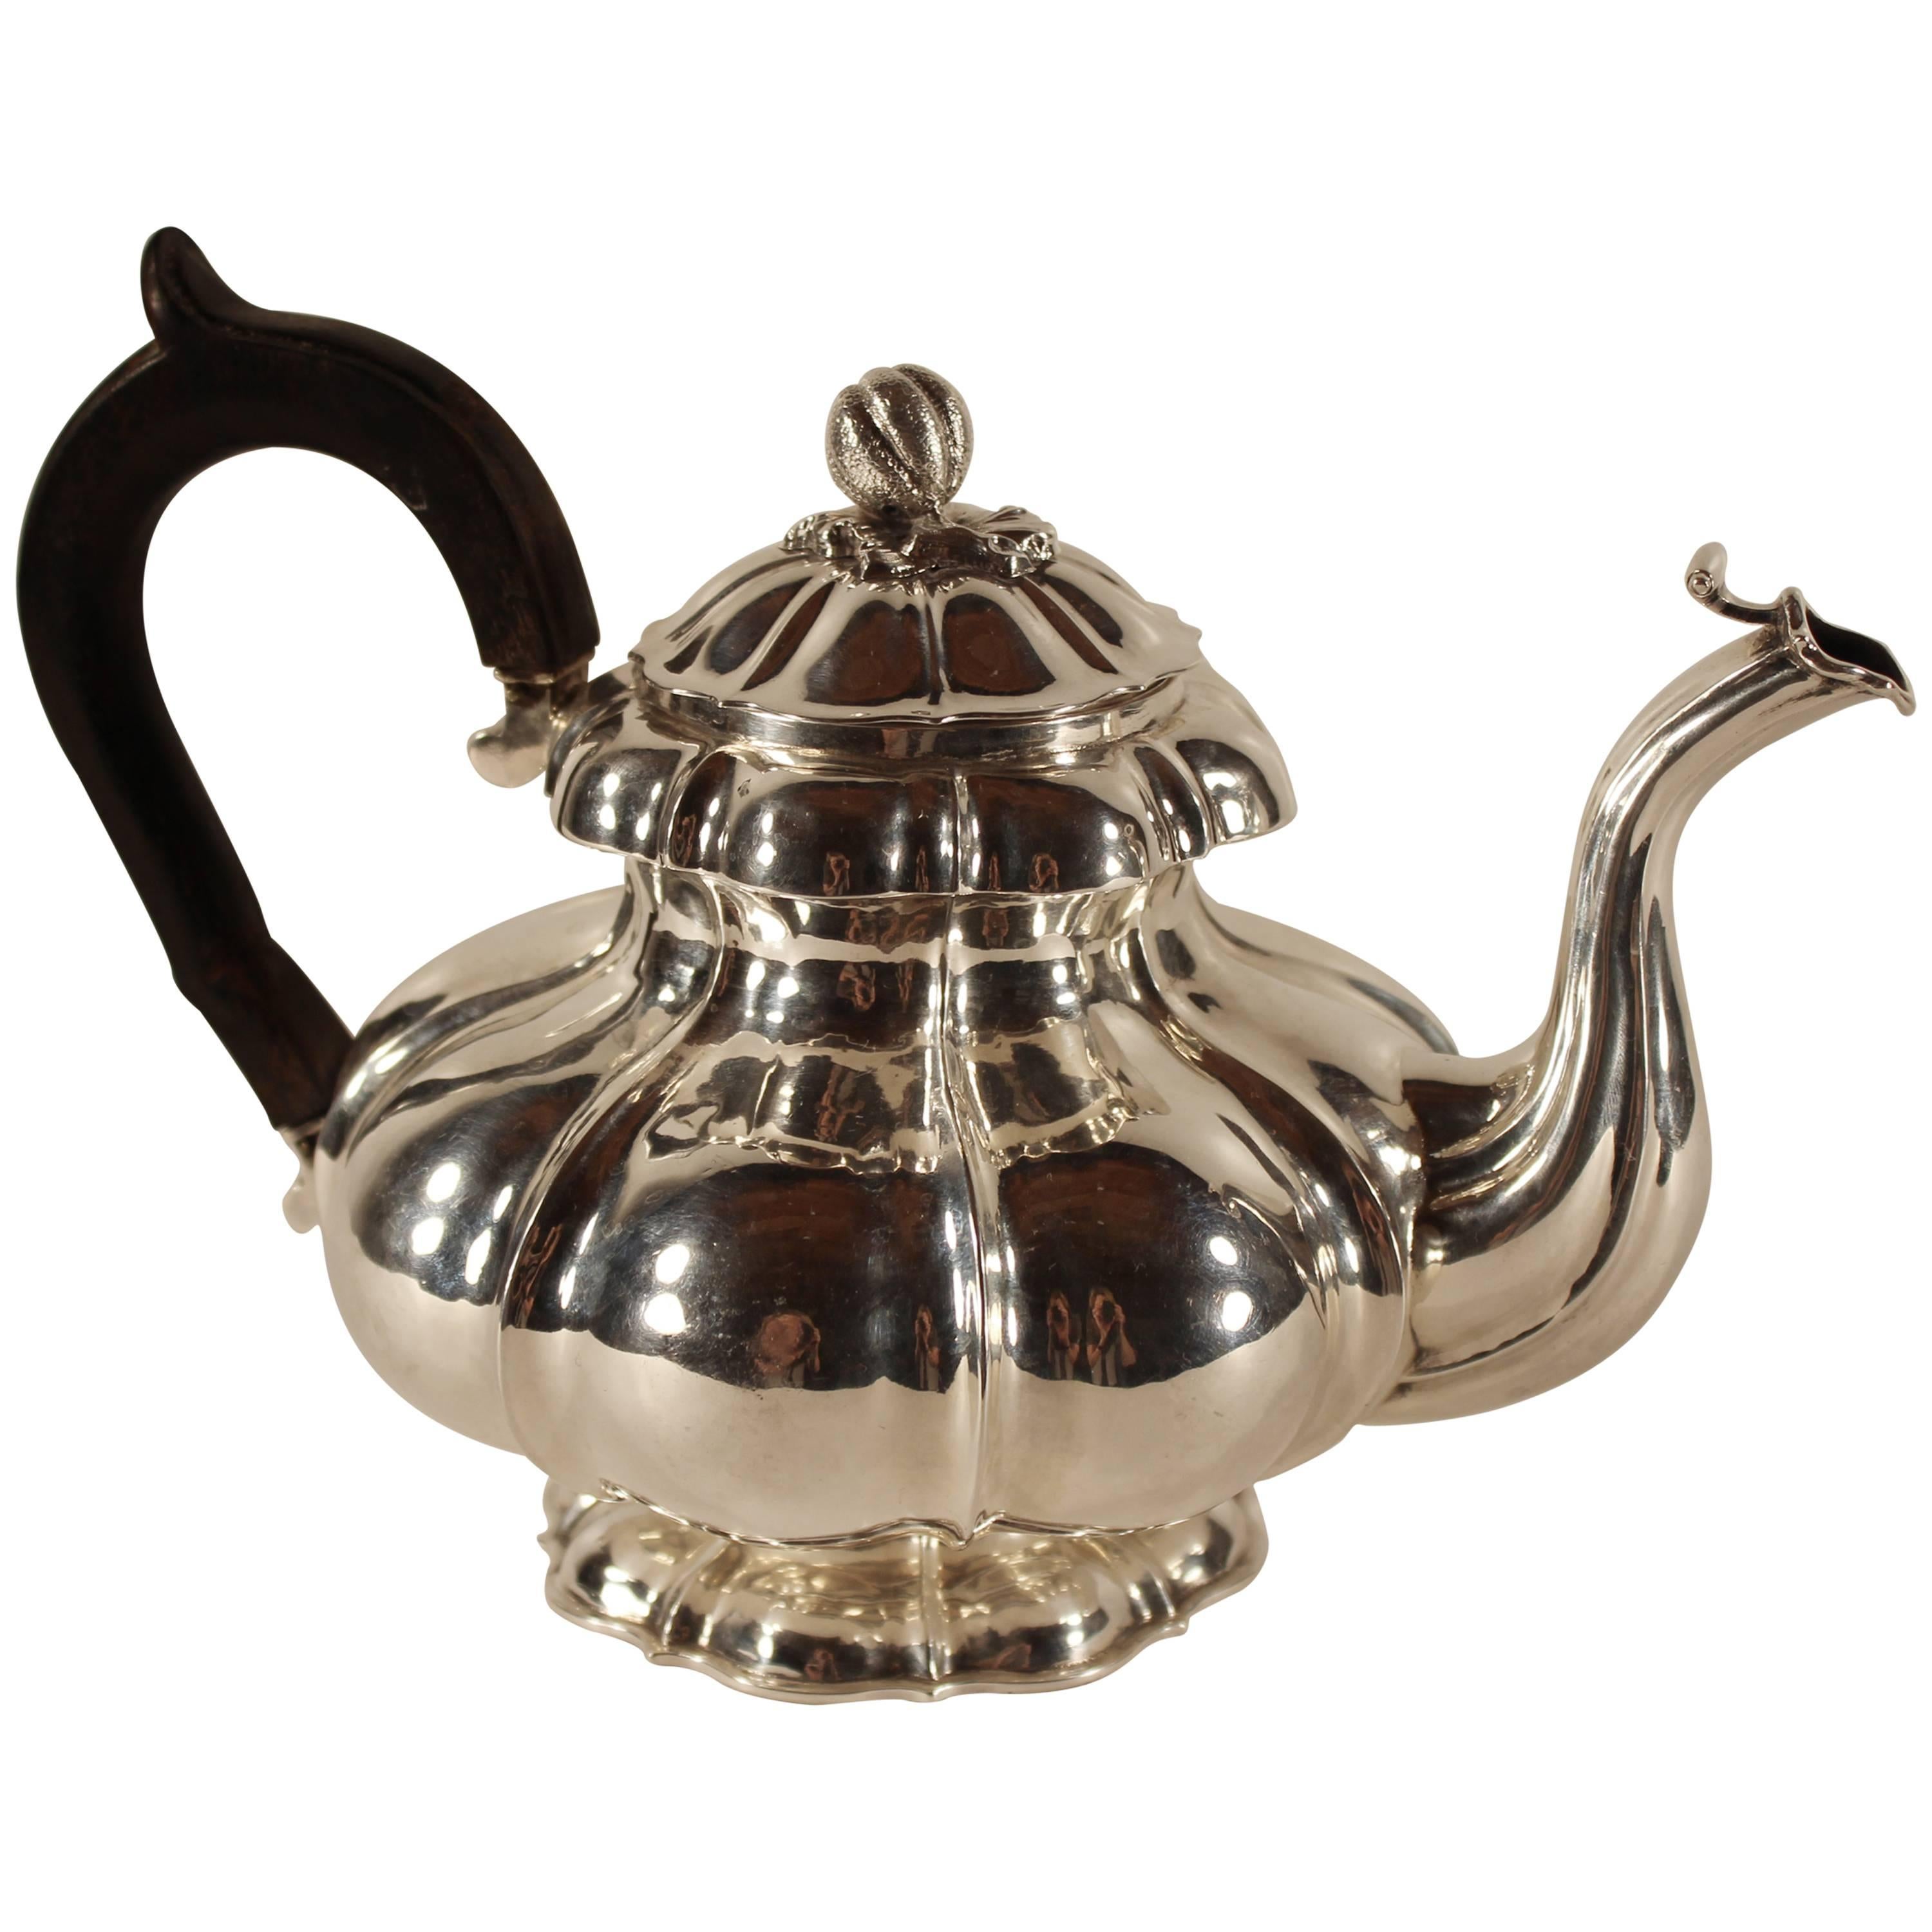 Antique Silver Teapot, Belgium 1831-1869